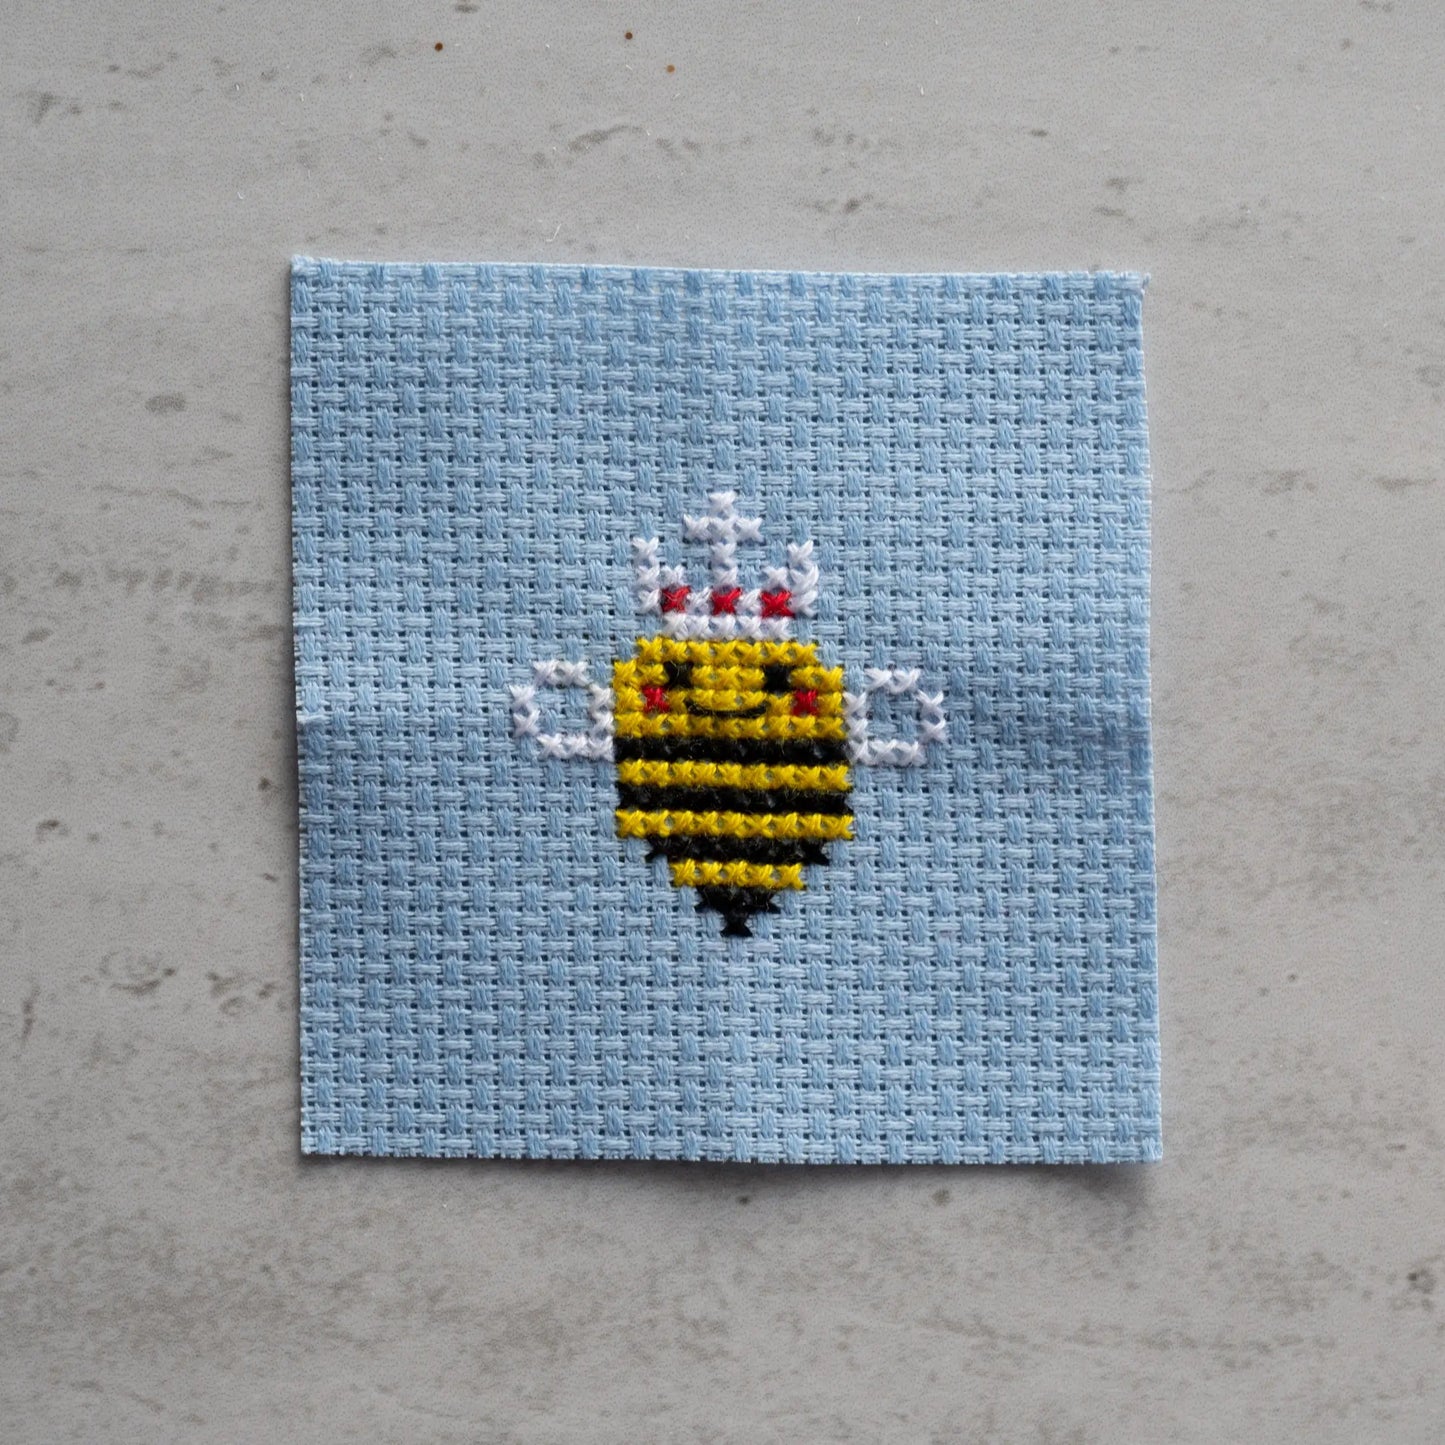 Kawaii Queen Bee Cross Stitch Kit